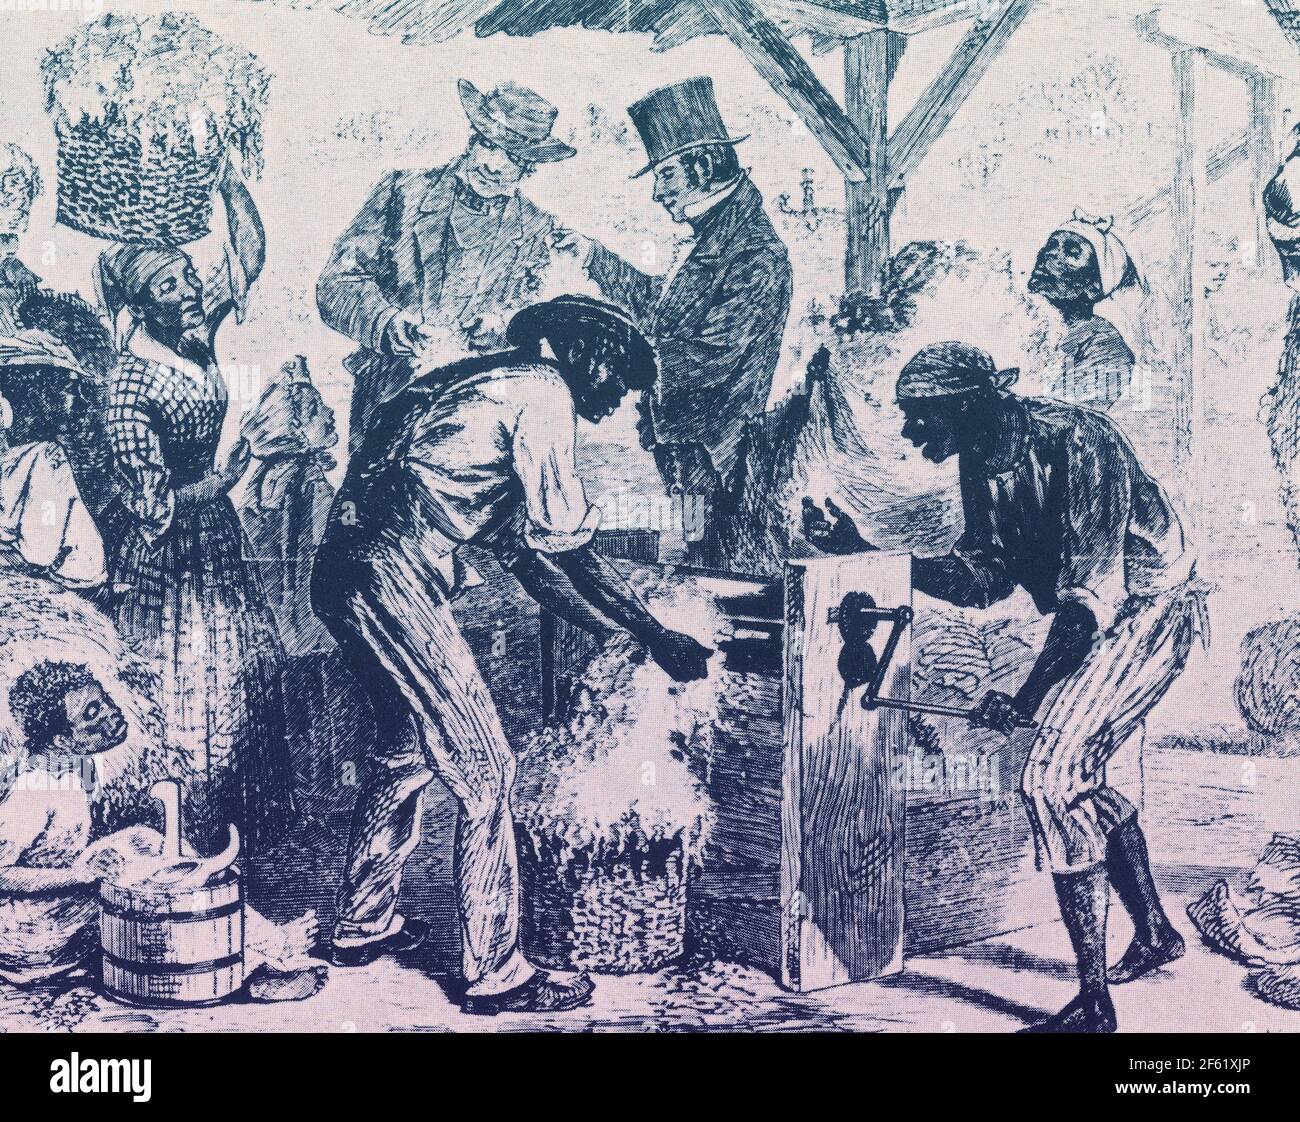 Eli Whitney, Cotton Gin, 1869 Stock Photo